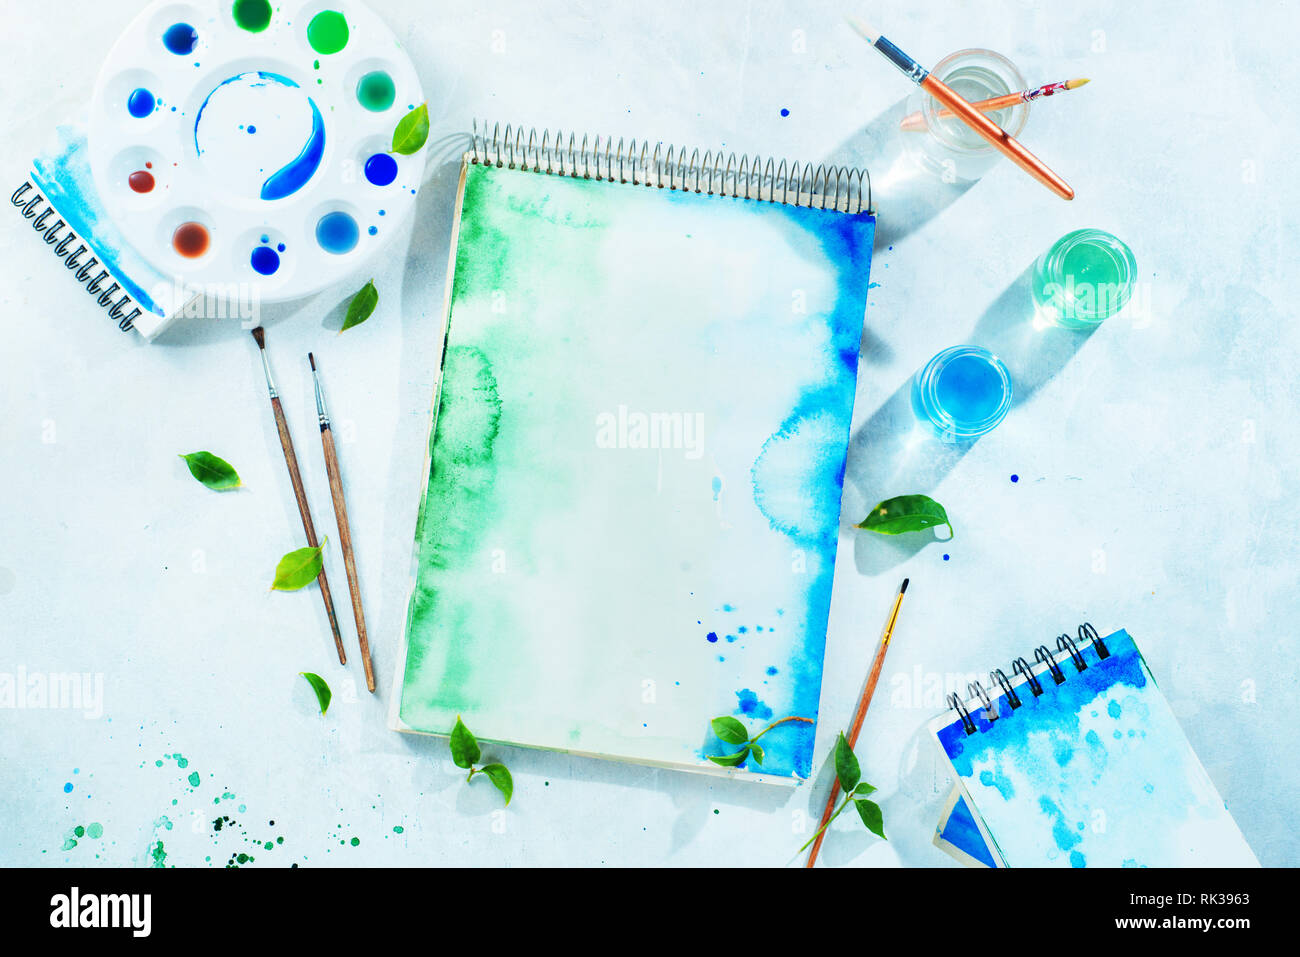 Molla di disegno concetto con gli strumenti dell'artista, il verde e il blu album da disegno ad acquerello, i pennelli e la tavolozza dei colori su uno sfondo luminoso con spazio di copia Foto Stock